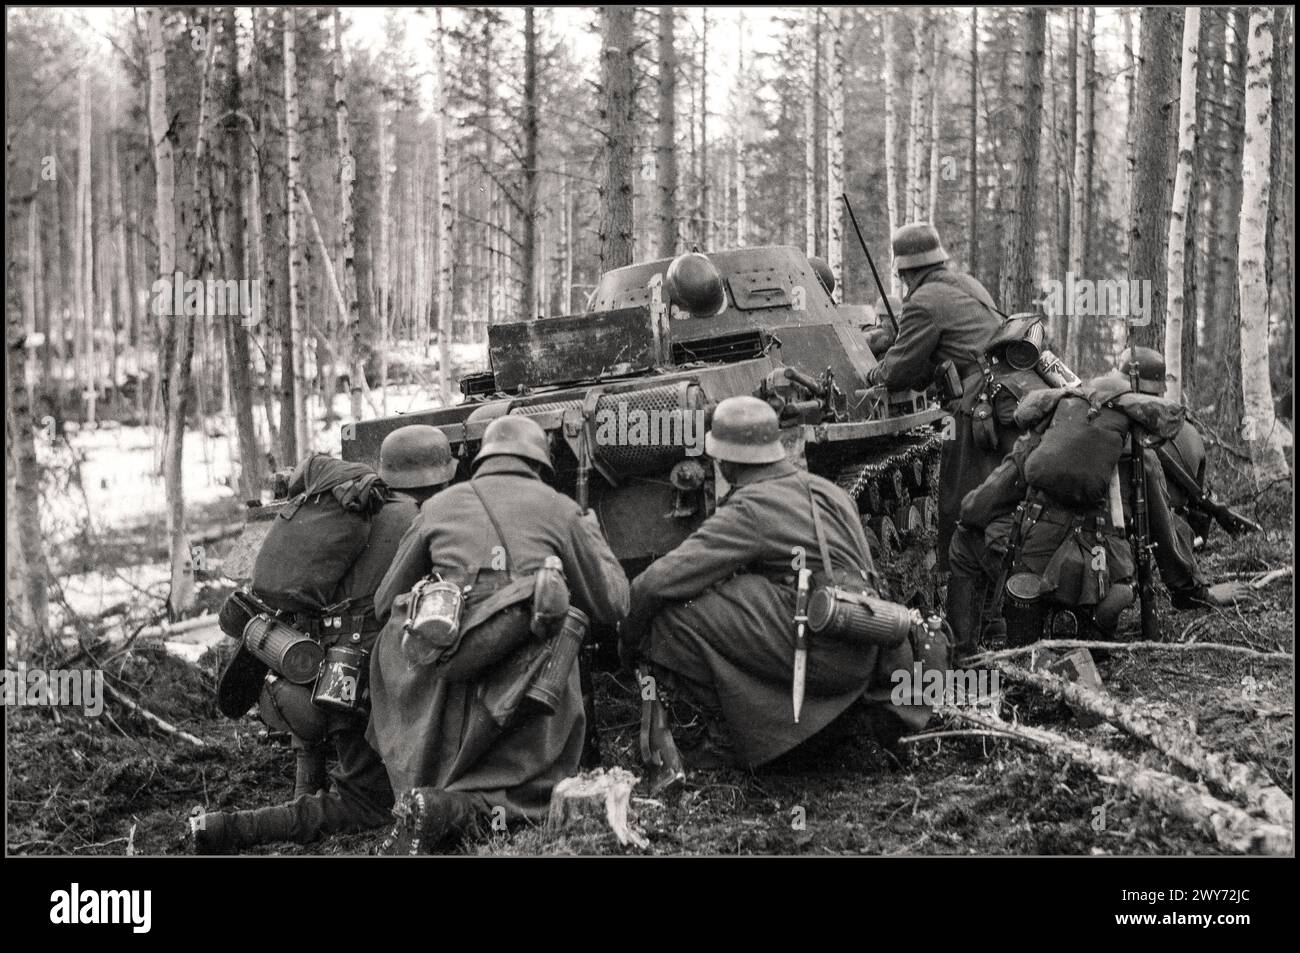 WW2 1942 les rangers de montagne du XVIIIe corps d'armée de la Wehrmacht de l'Allemagne nazie avancent sous le couvert d'un char Pz.Kpfw dans la forêt dans la direction de Kestenga. 'Opération offensive Kestenga' Carélie Nord-Ouest URSS Banque D'Images